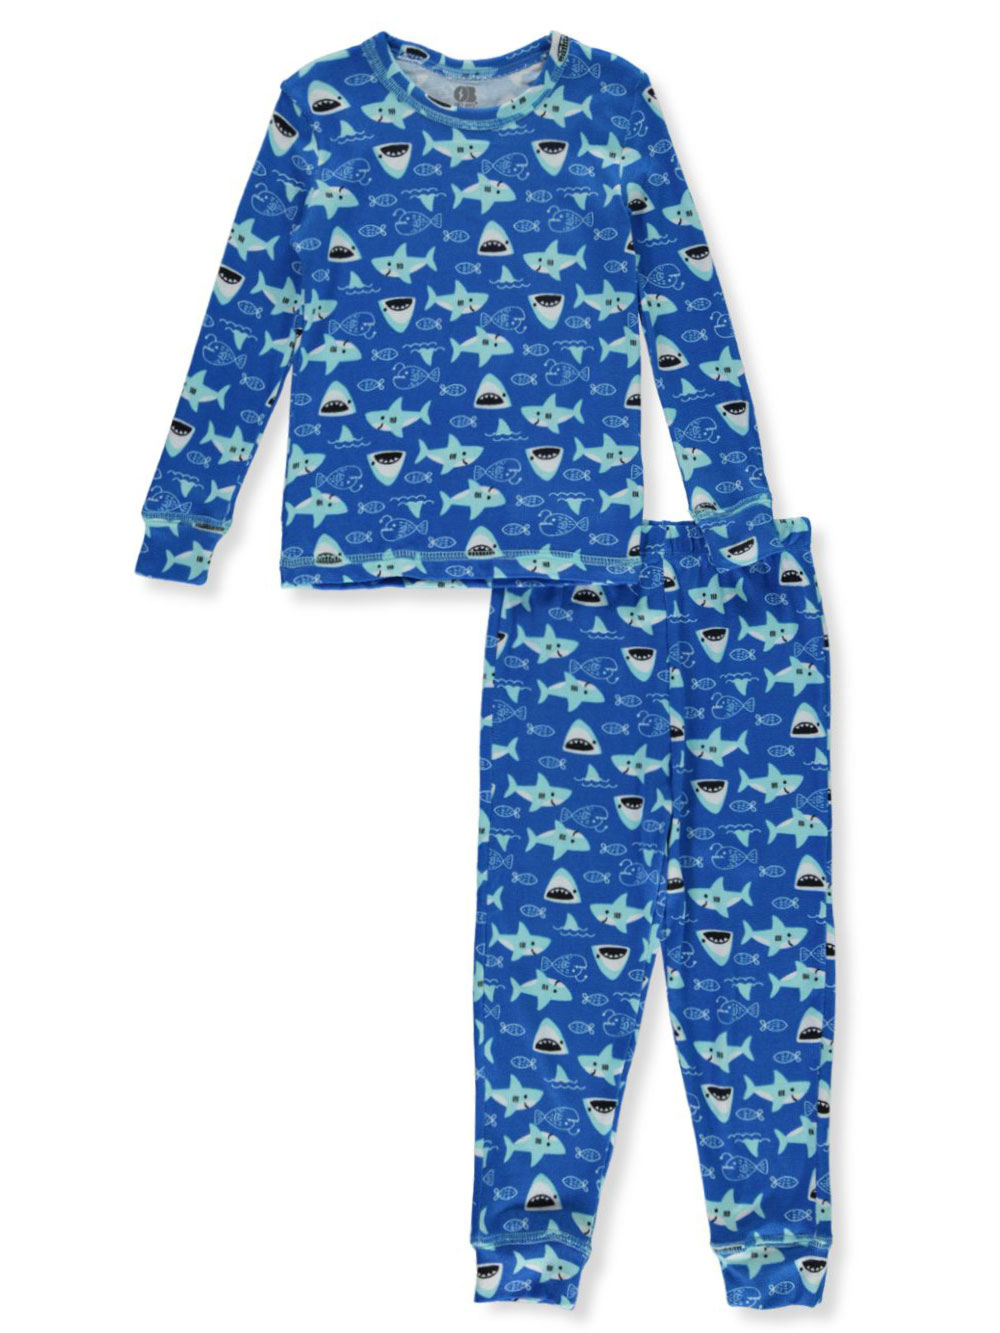 Size 2t Sleepwear for Boys